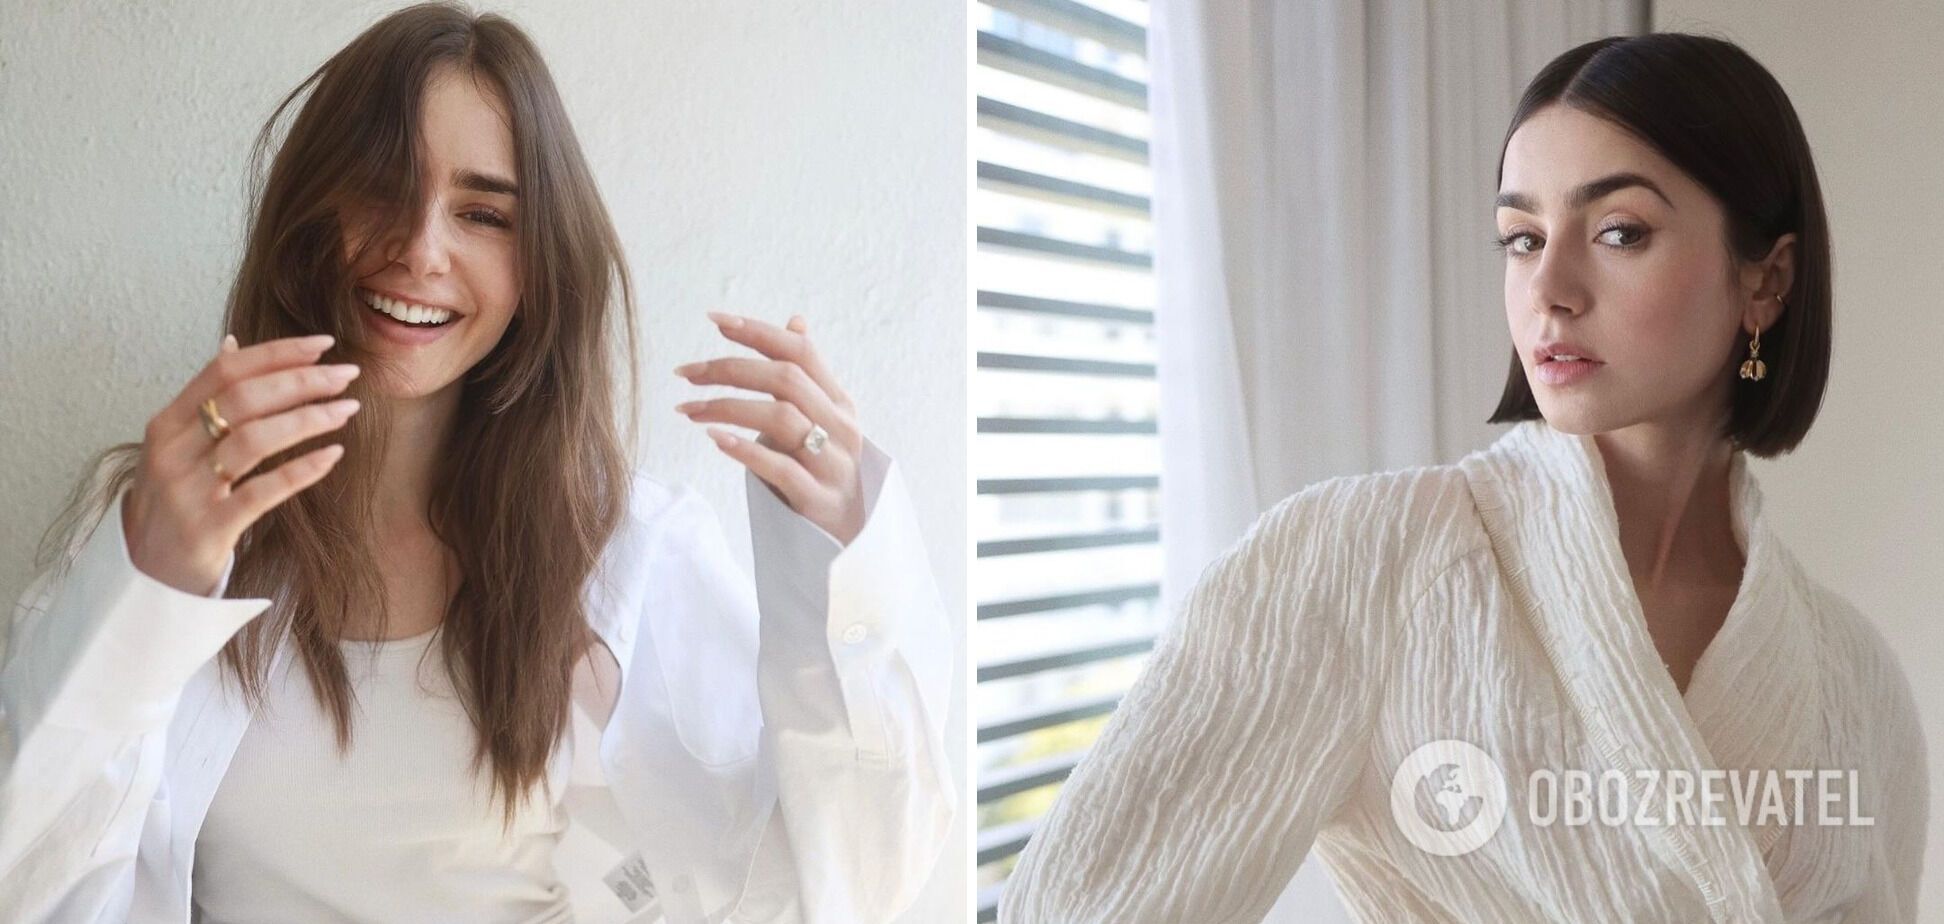 Gwiazda serialu Emily in Paris, Lily Collins, zamieniła swoje długie włosy na eleganckiego boba. Zdjęcia przed i po